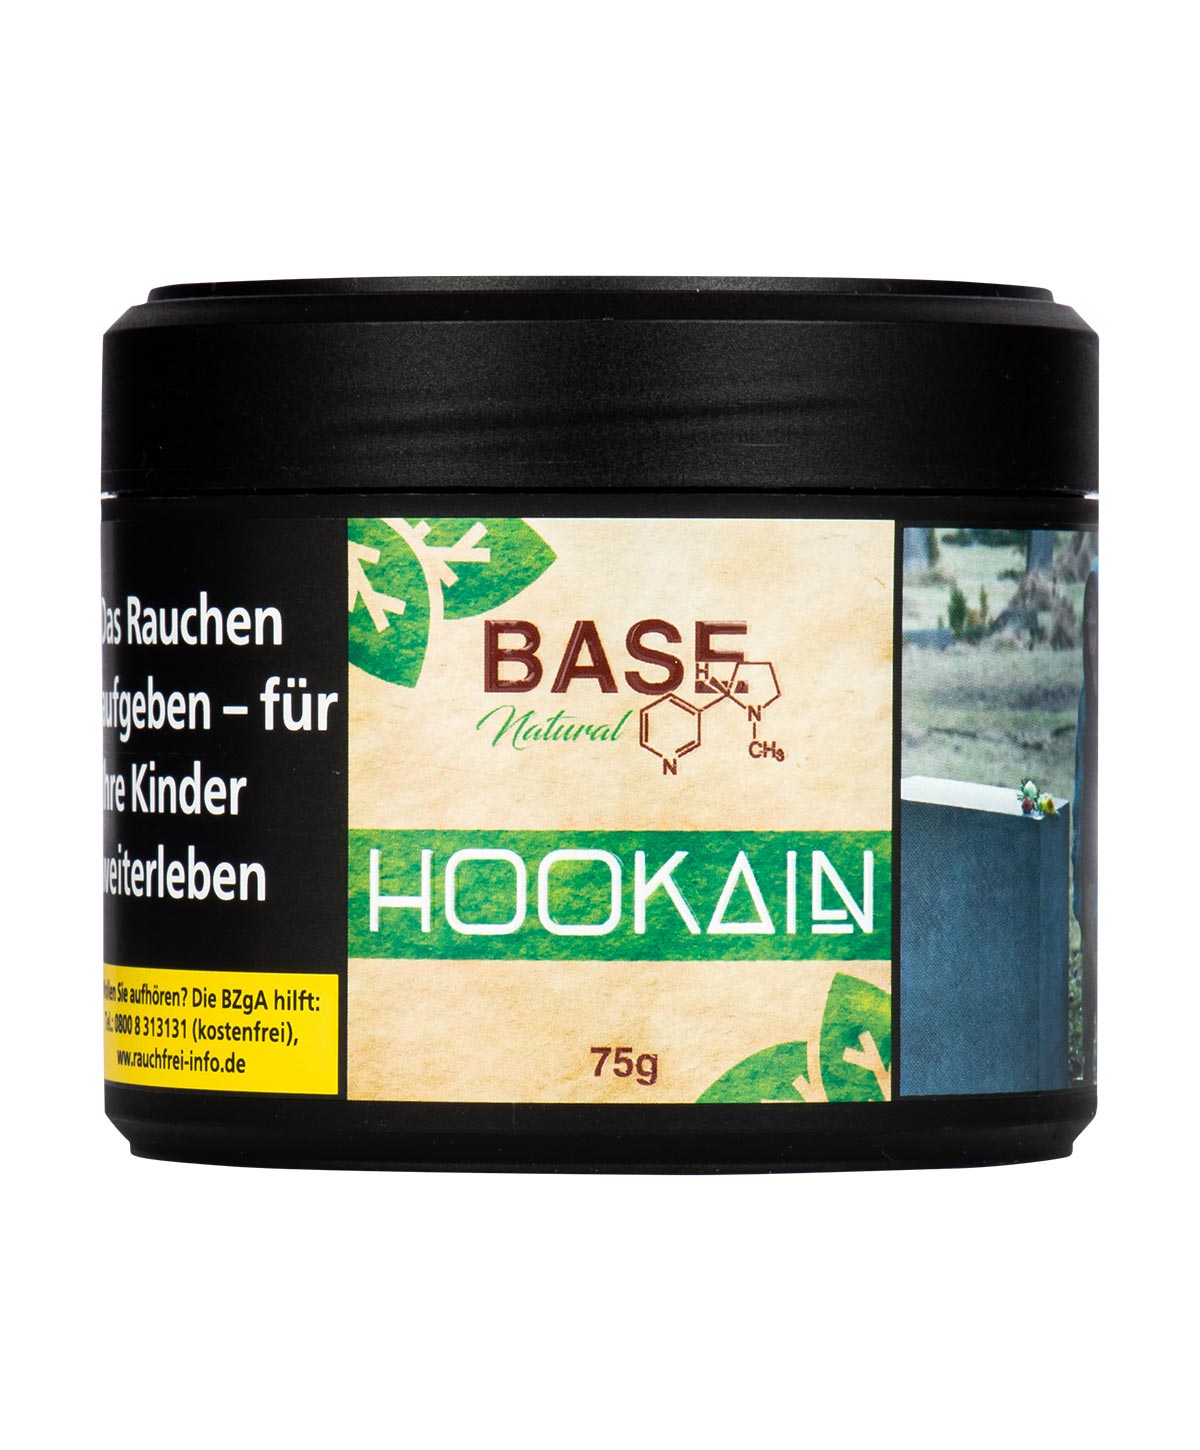 Hookain Natural Base Tobacco 75g